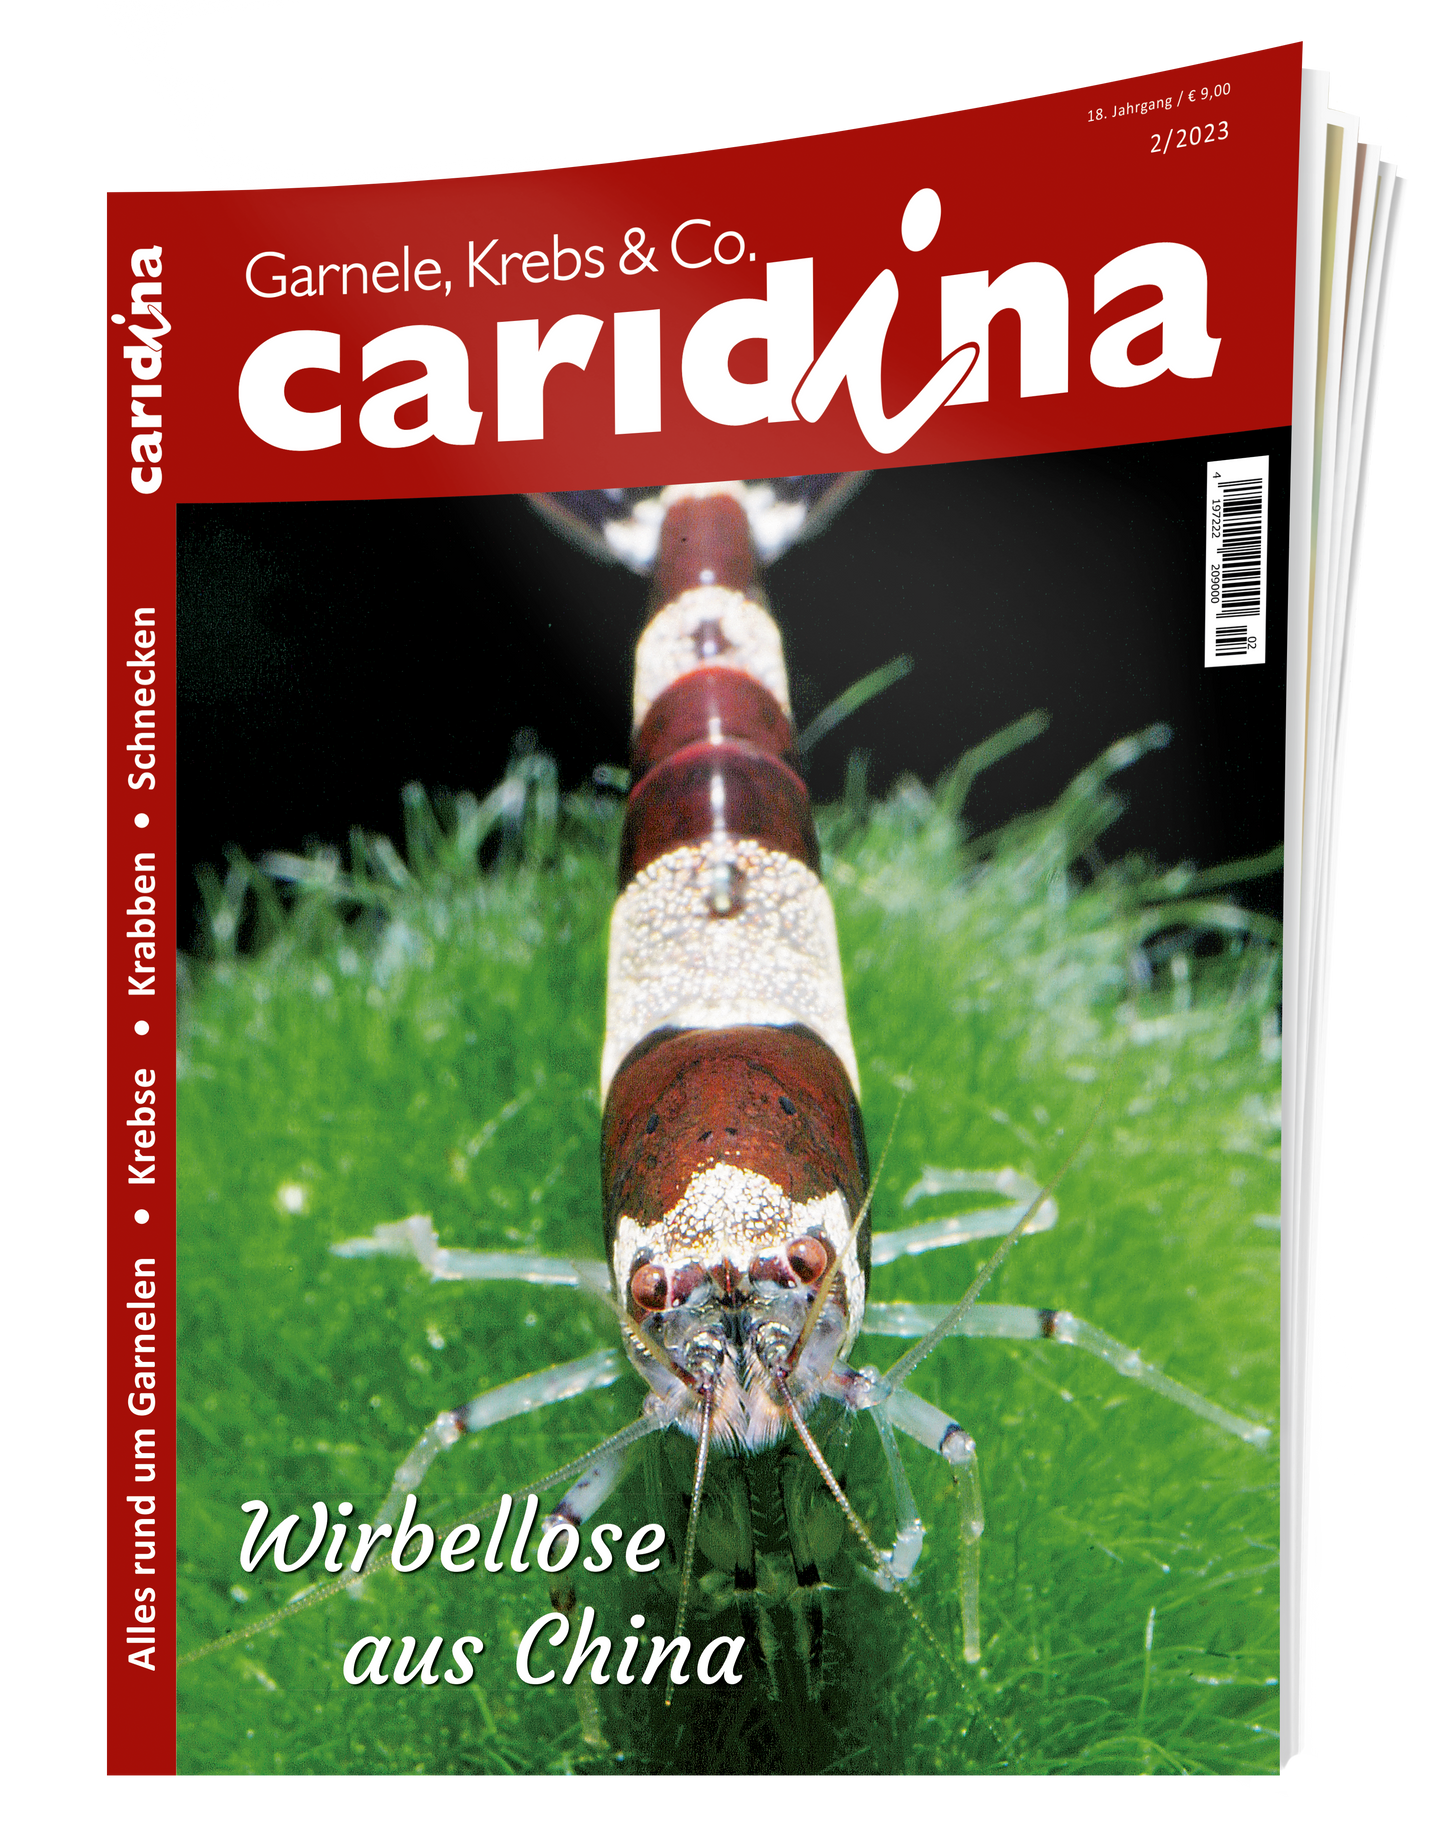 caridina 2/2023